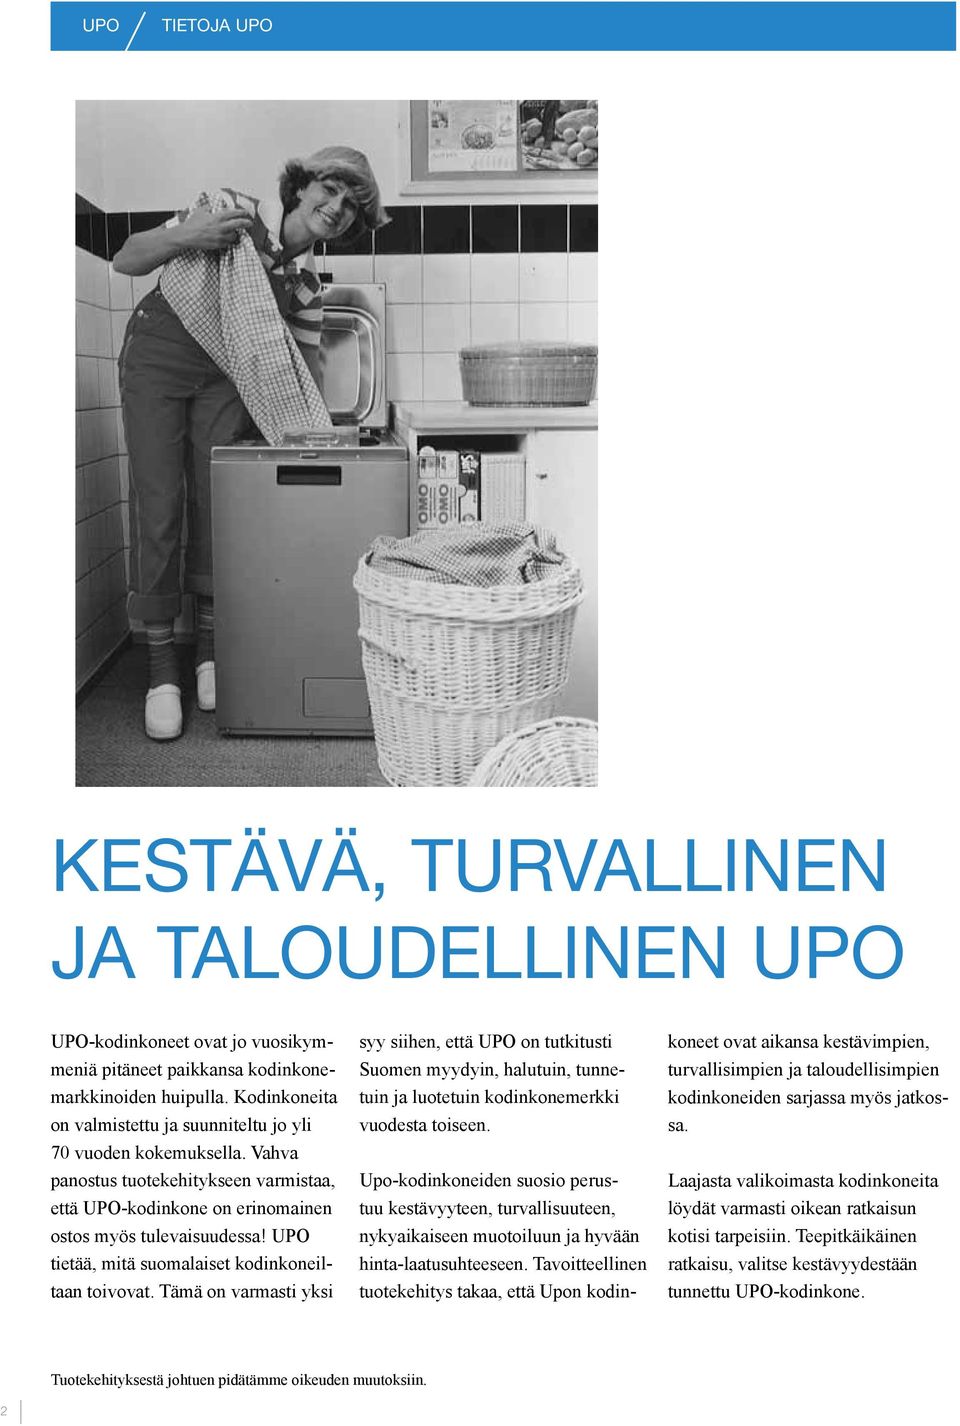 UPO tietää, mitä suomalaiset kodinkoneiltaan toivovat. Tämä on varmasti yksi syy siihen, että UPO on tutkitusti Suomen myydyin, halutuin, tunnetuin ja luotetuin kodinkonemerkki vuodesta toiseen.